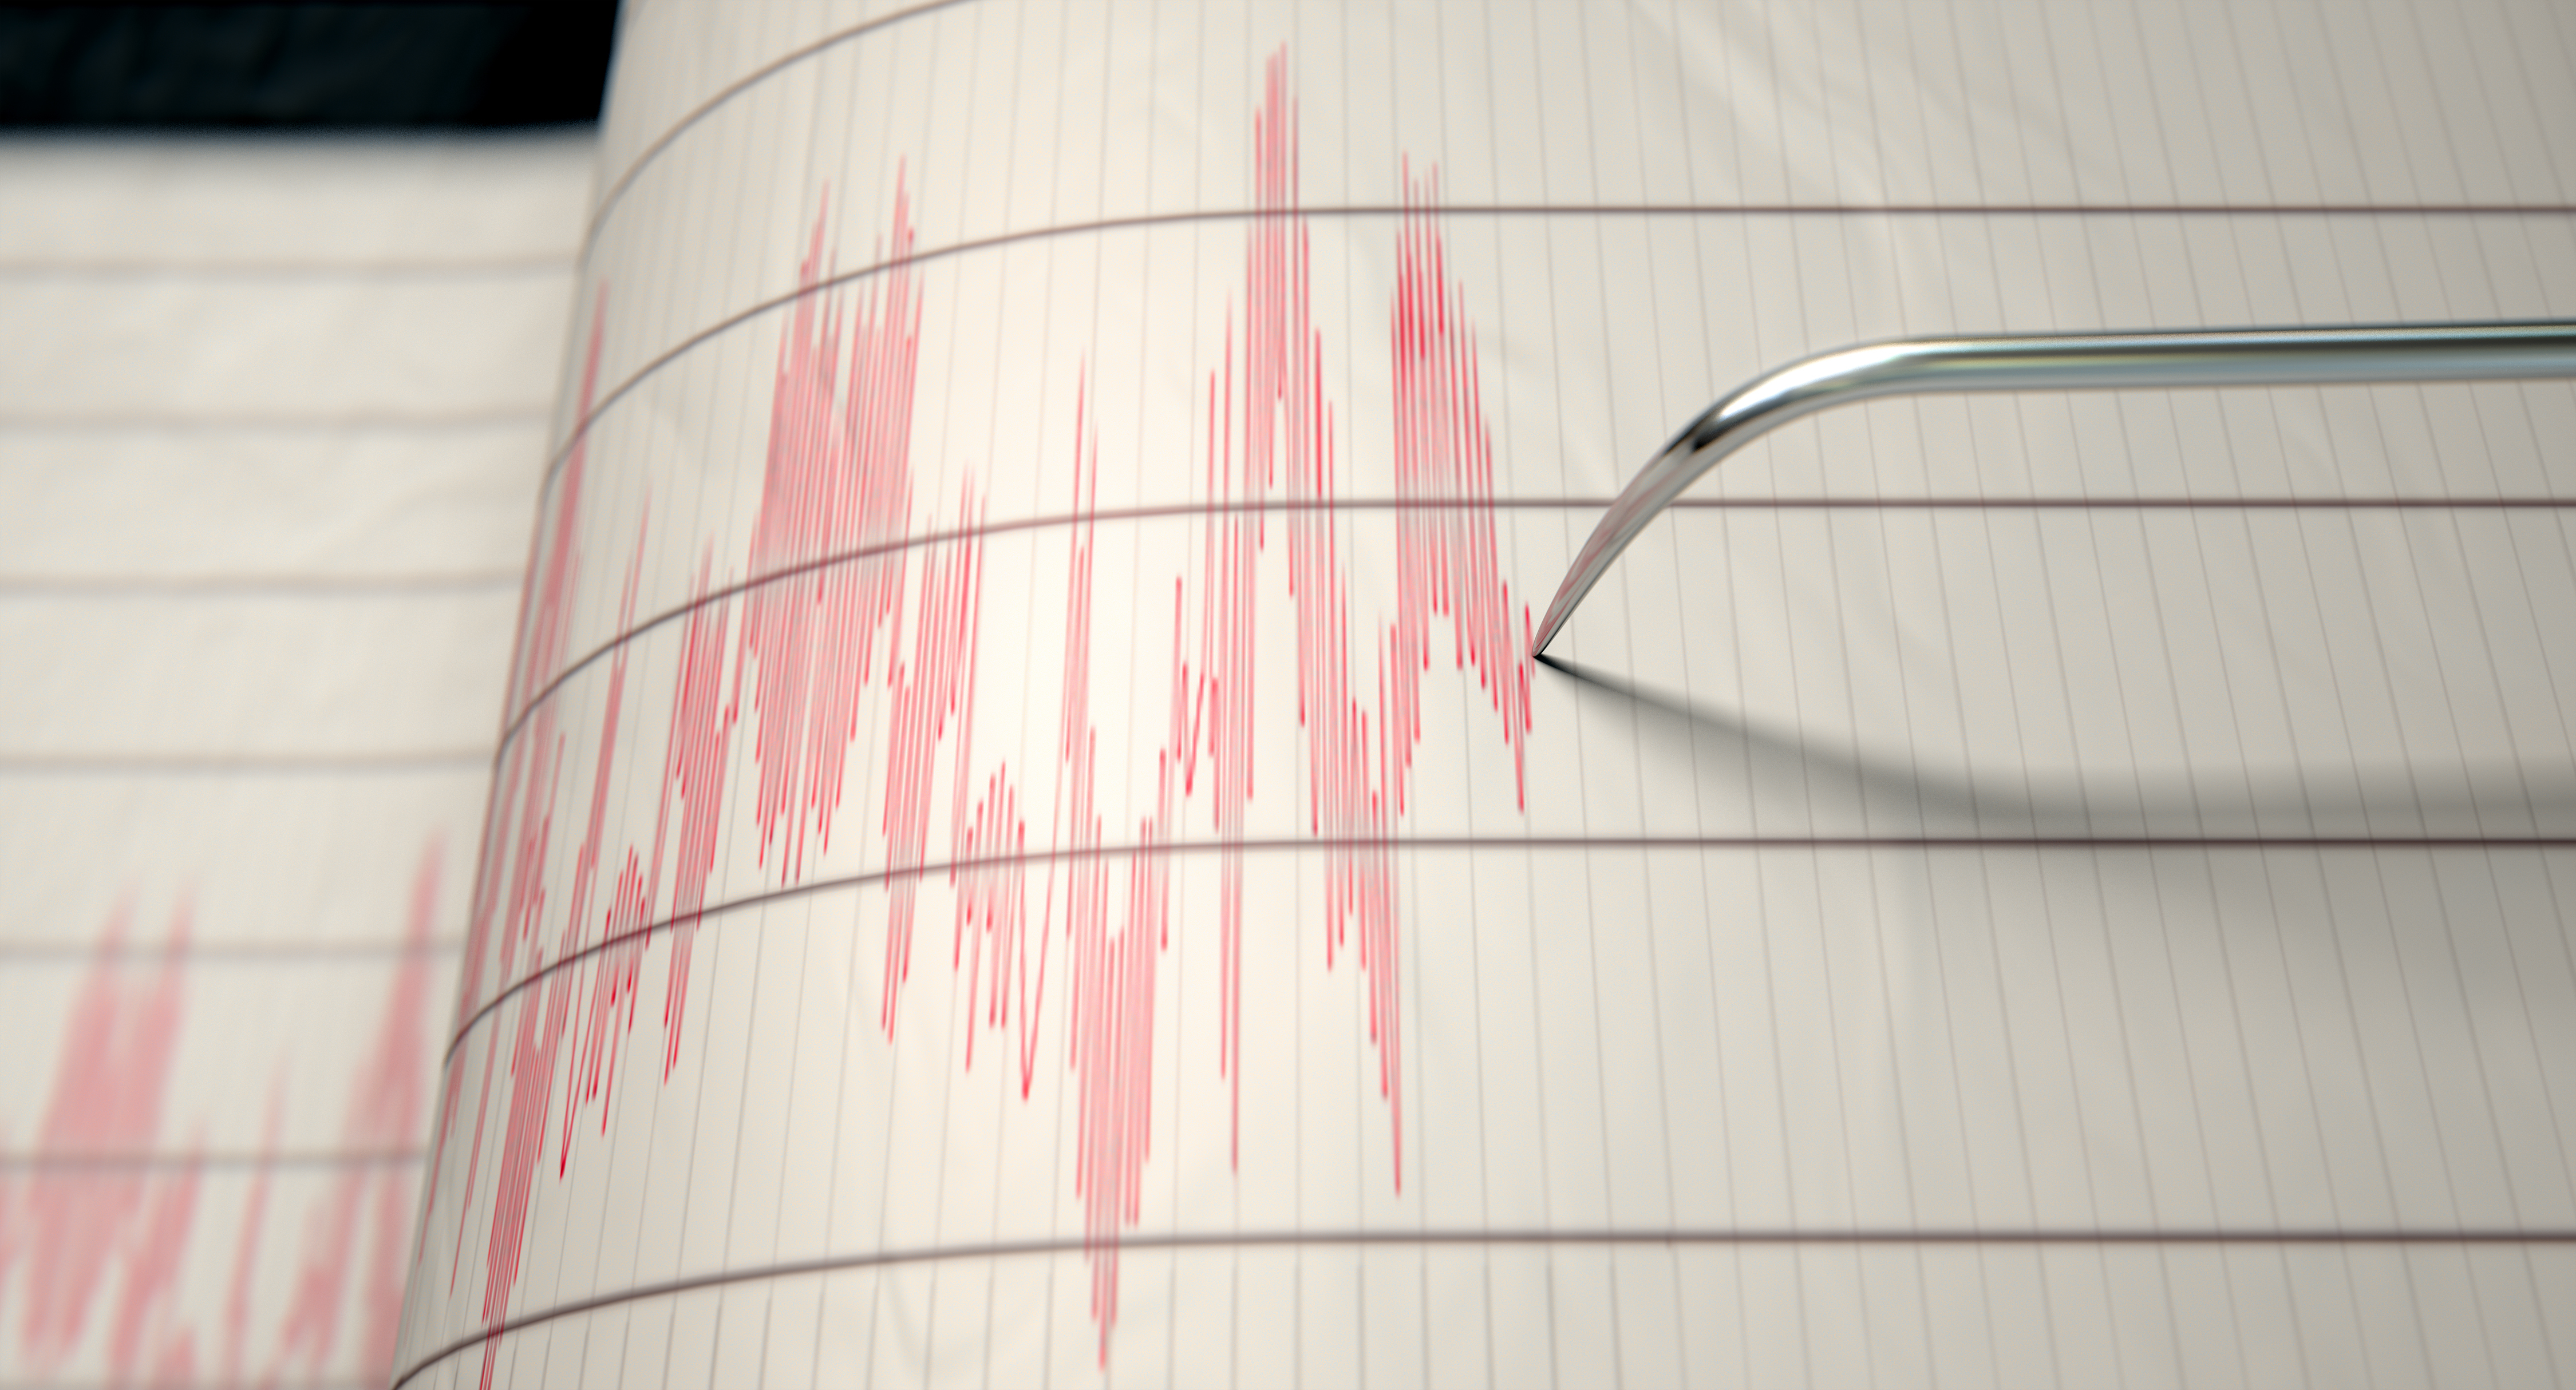 Un cutremur cu magnitudinea 3 a avut loc în județul Buzău